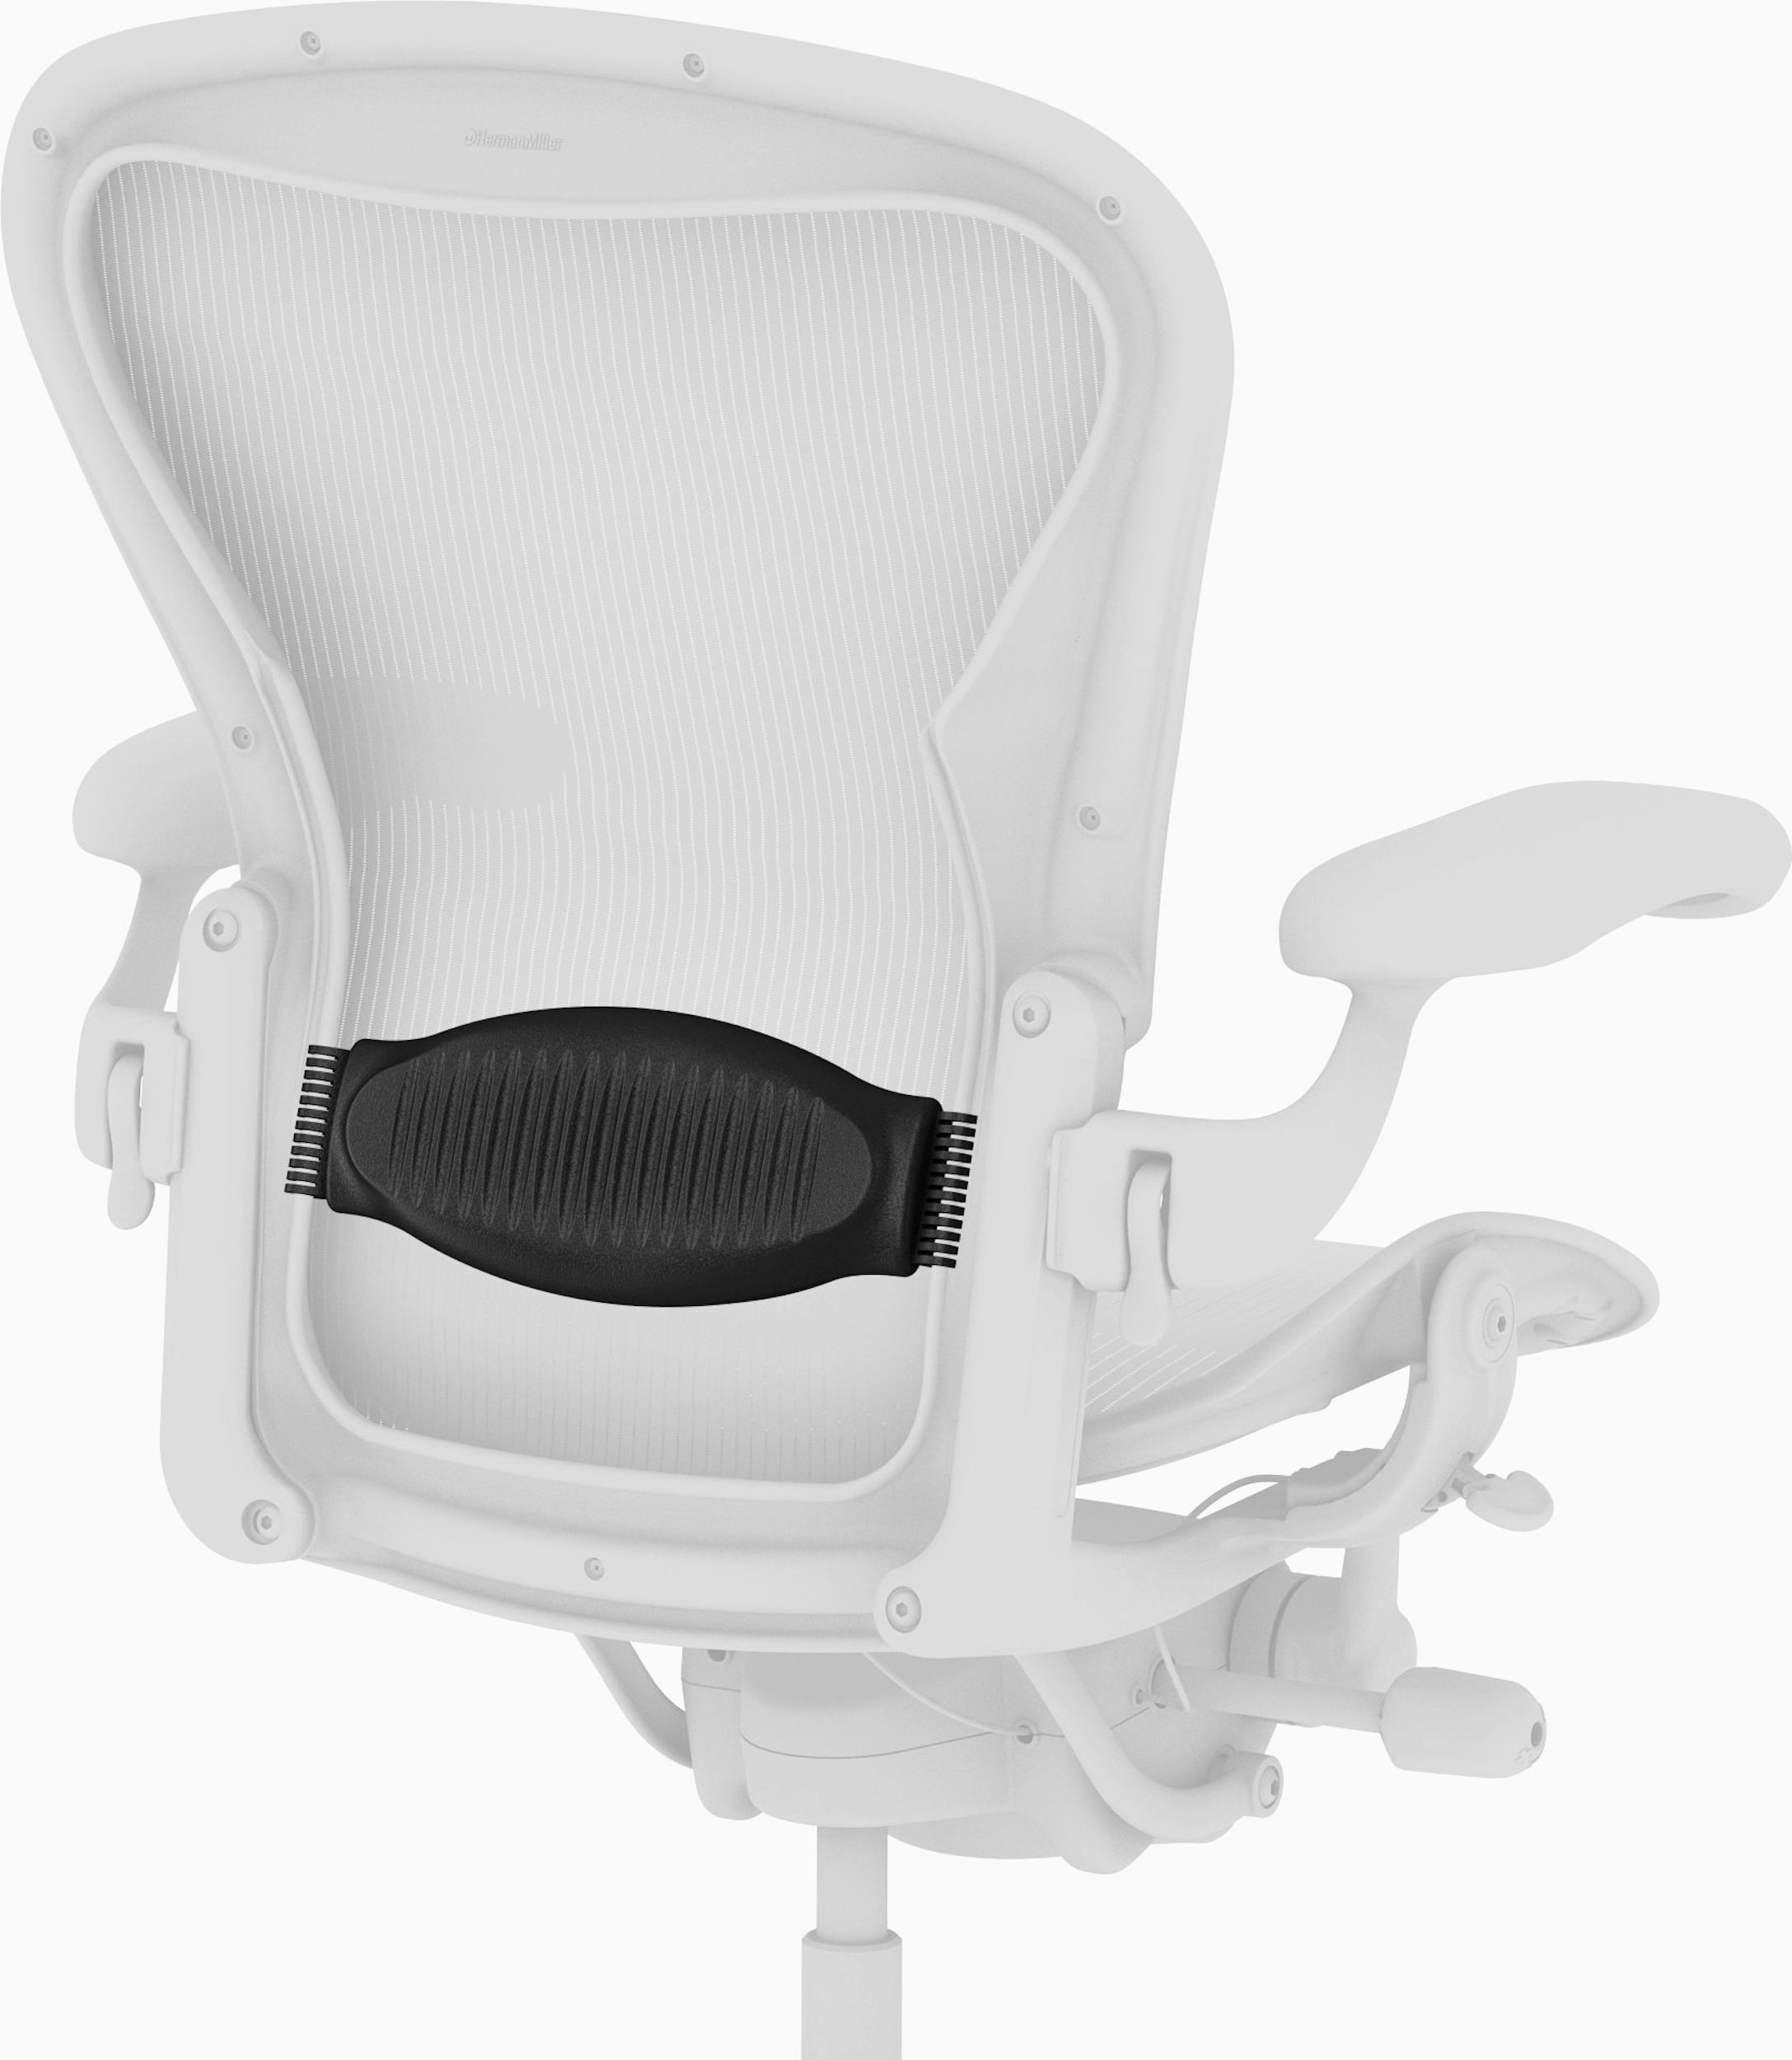 Aeron Refurbish Casters Lumbar Pad Seat Foam Insert